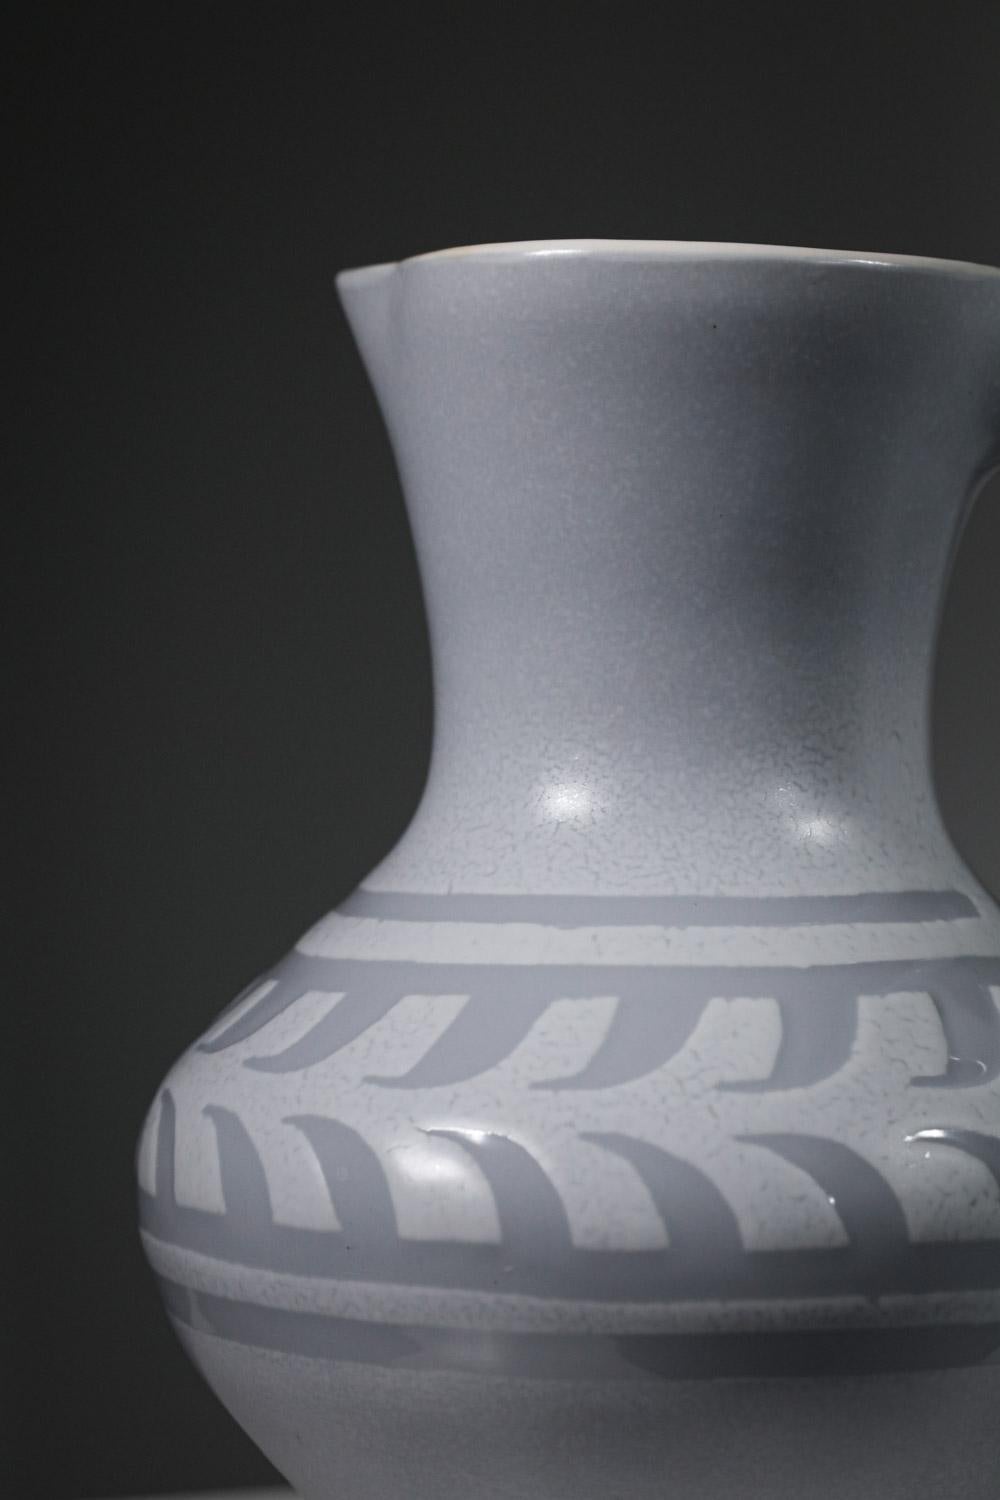 Großer Keramikkrug oder Vase von Roger Capron aus den 60er Jahren. Emaillierung in hellgrauen und weißen Farbtönen. Nüchternes und reines Design, verziert mit einem Fries rund um die Vase. Sehr schöner Vintage-Zustand, Signatur des Künstlers unter